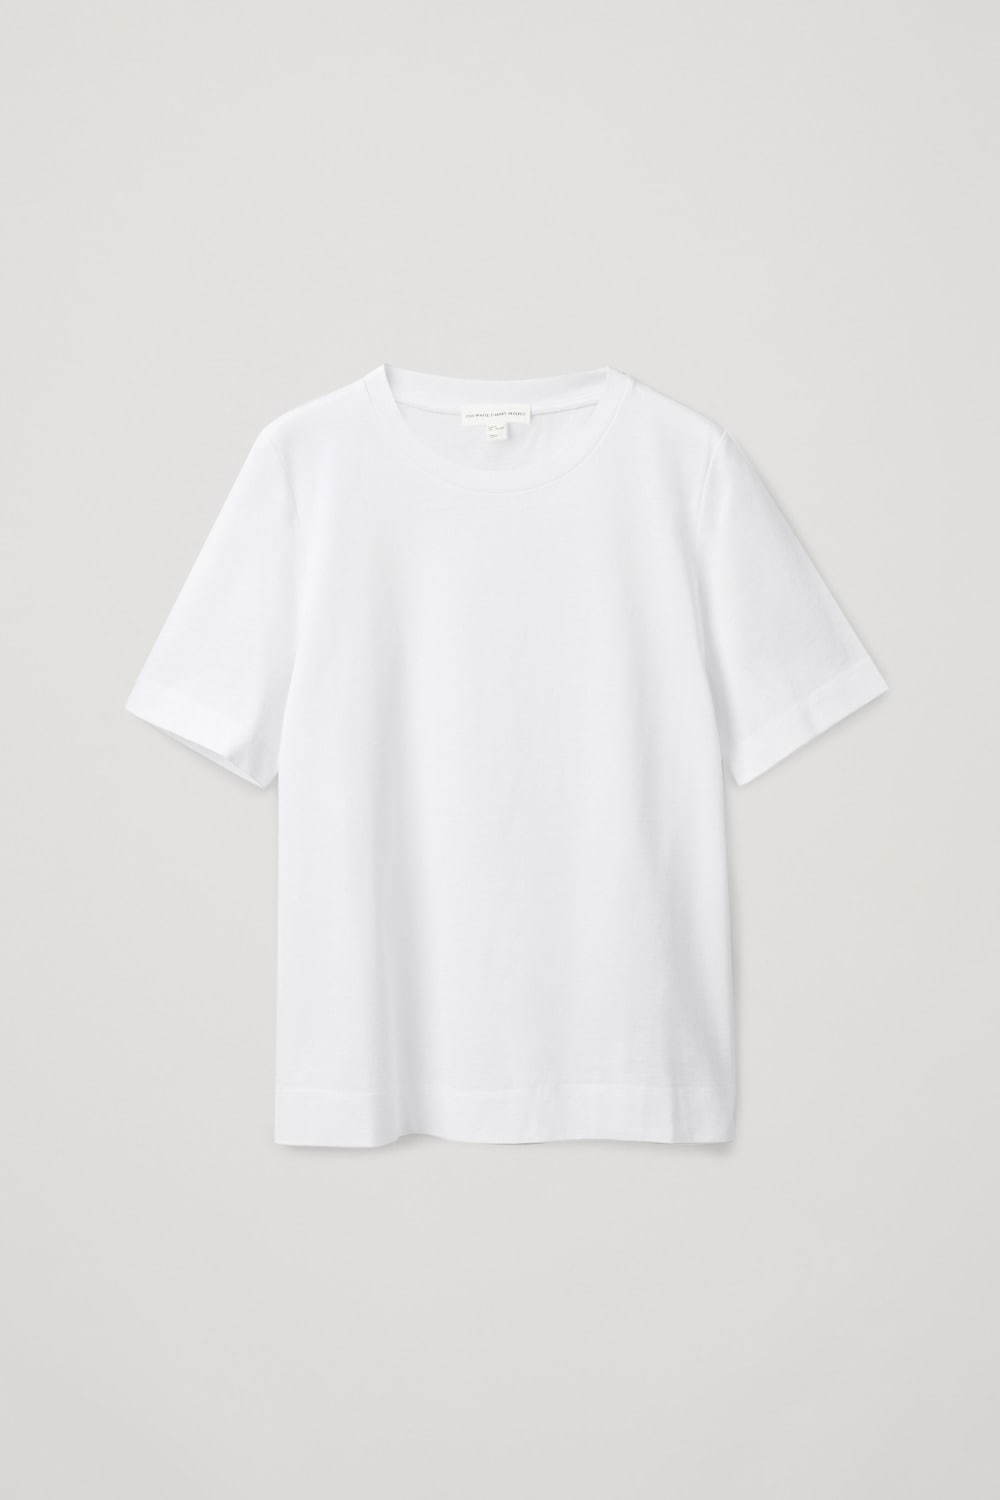 レギュラーフィット オーガニックコットン Tシャツ 4,500円(税込)